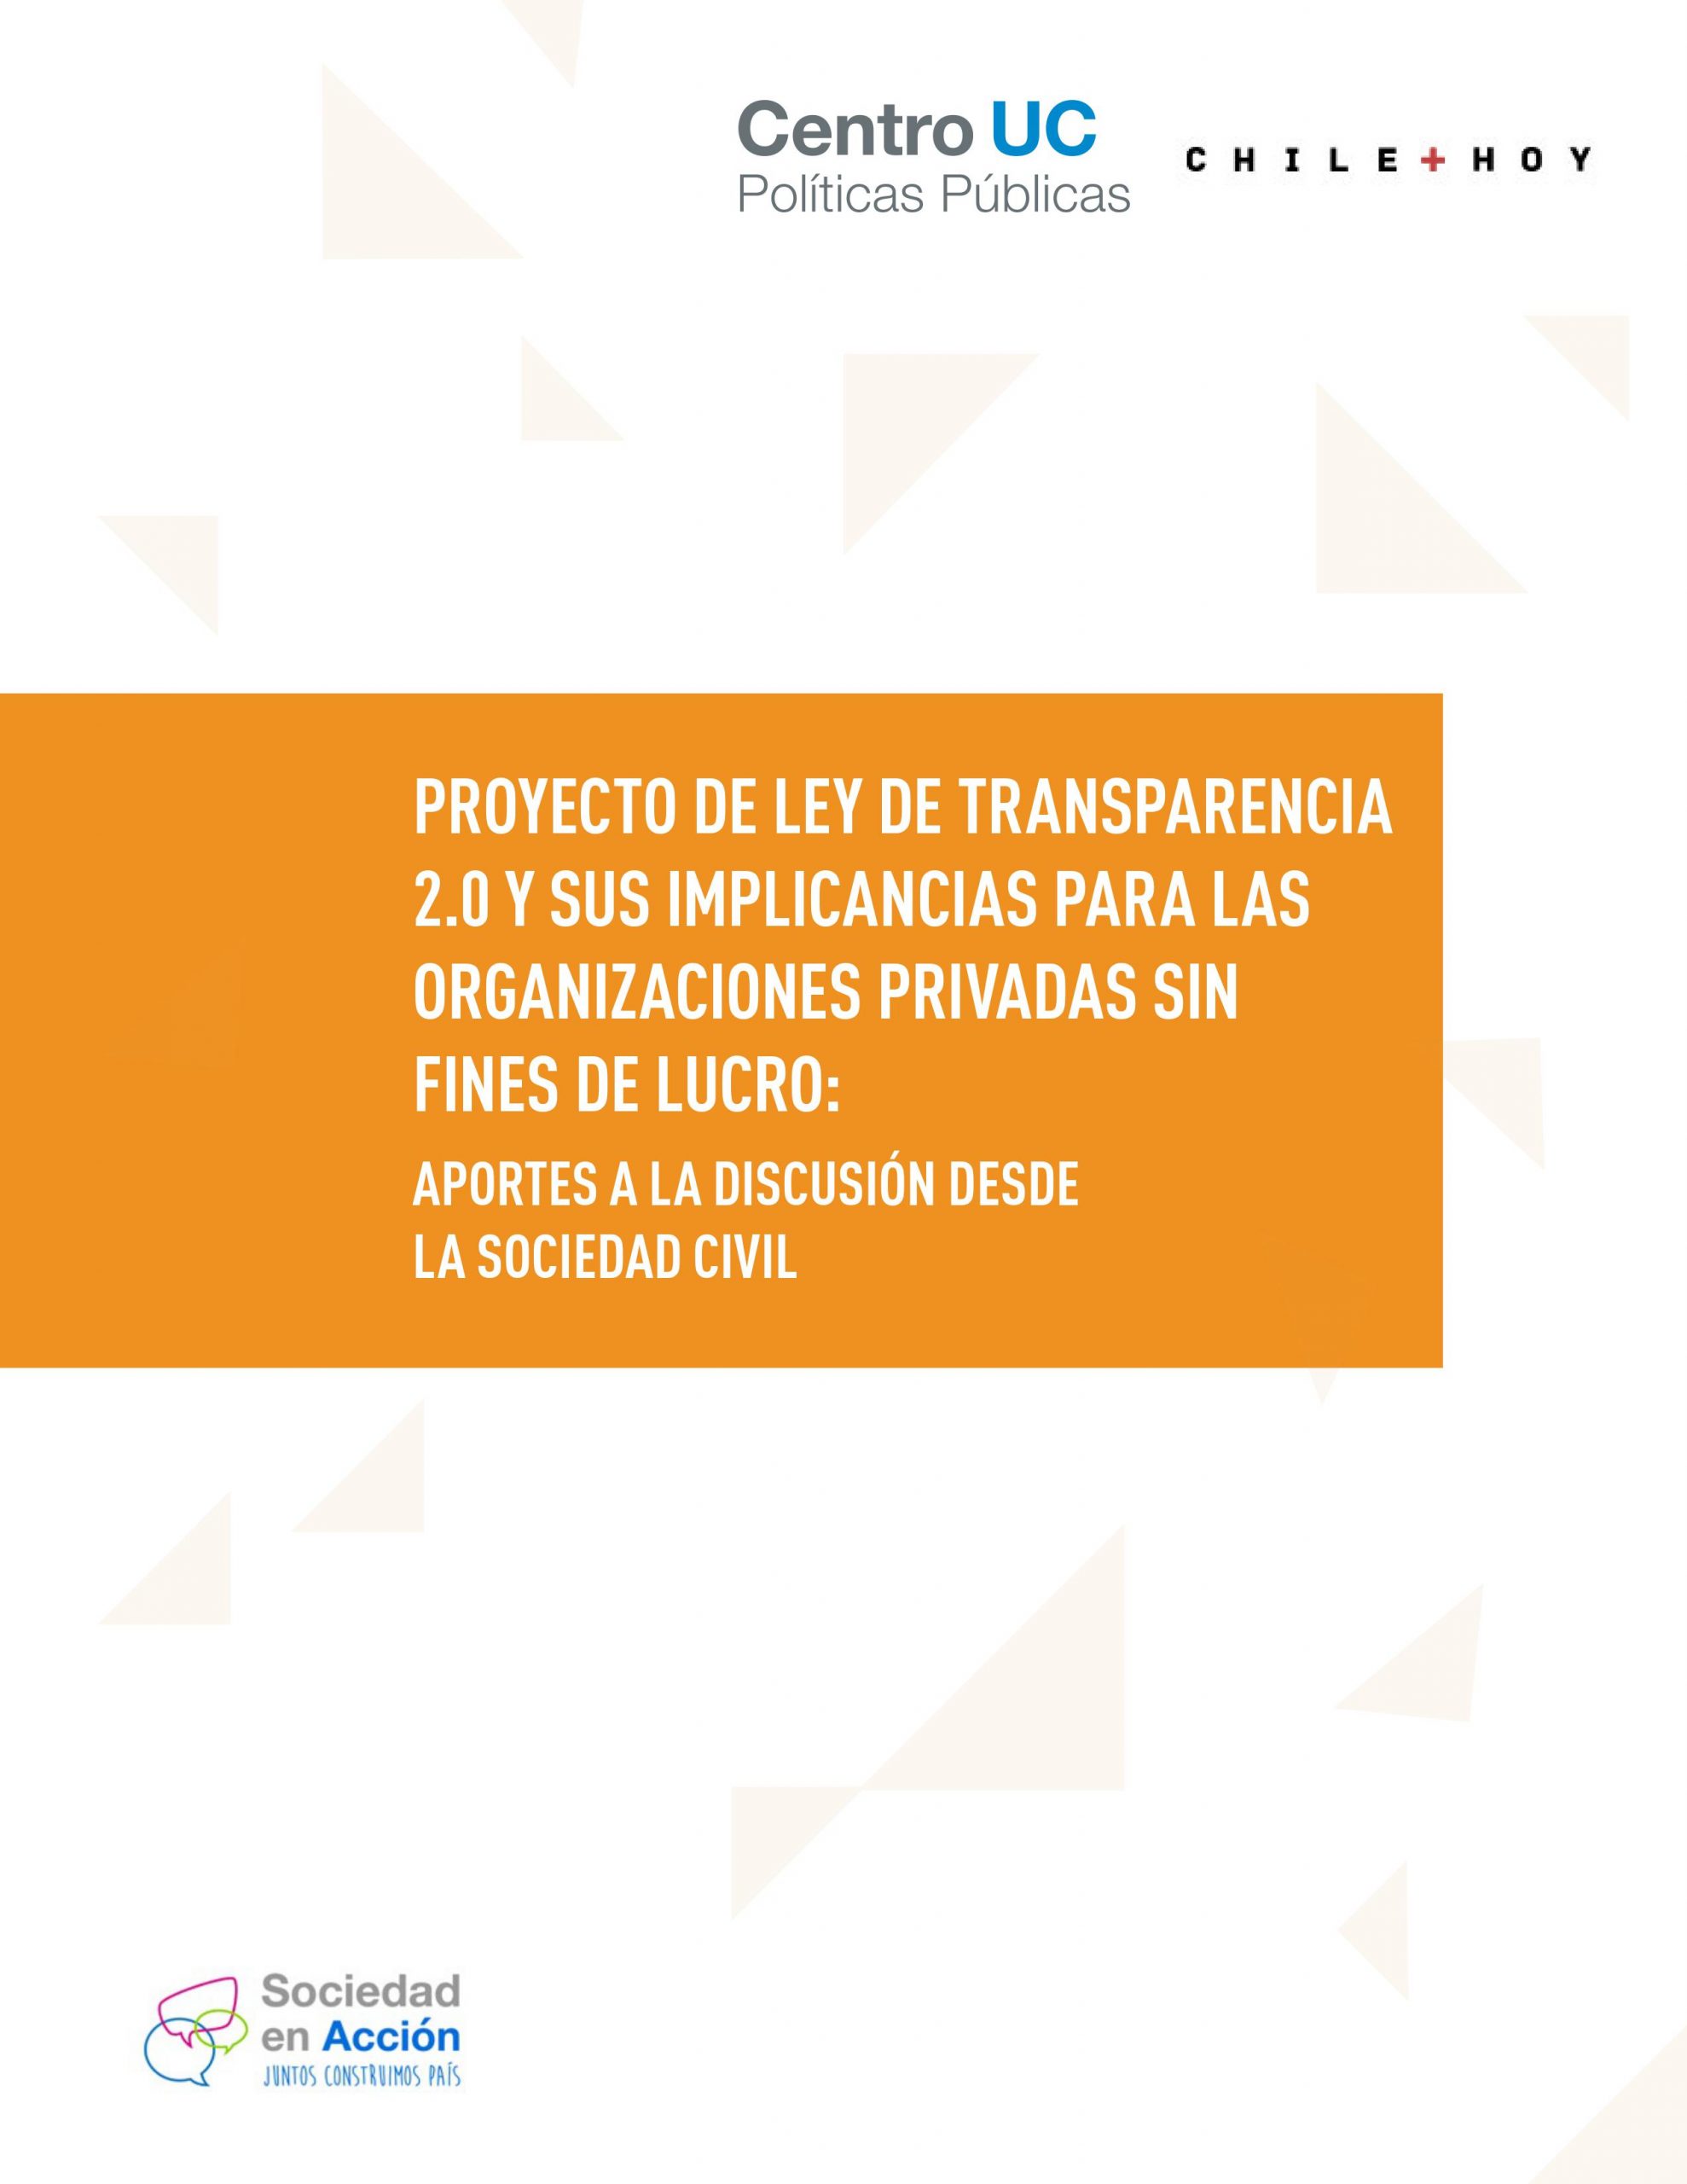 Imagen de Proyecto de Ley de Transparencia 2.0 y sus implicancias para las organizaciones sin fines de lucro: aportes a la discusión desde la sociedad civil}